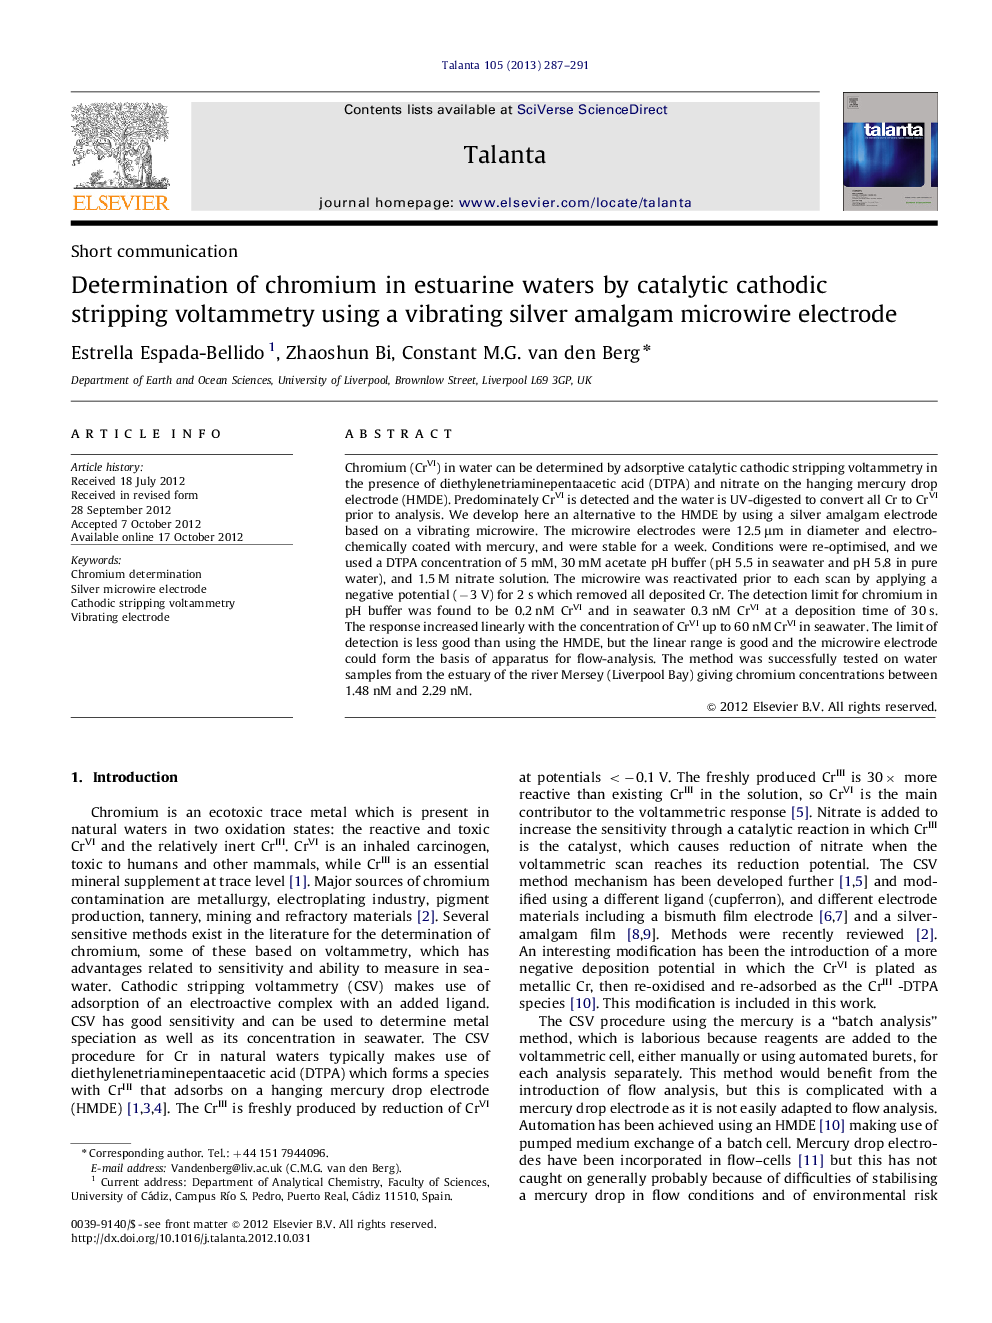 تعیین کروم در آبهای استوآرآب با استفاده از یک ولتامتری سدی کاتدی با استفاده از الکترود میکروویو آمالگام نقره 